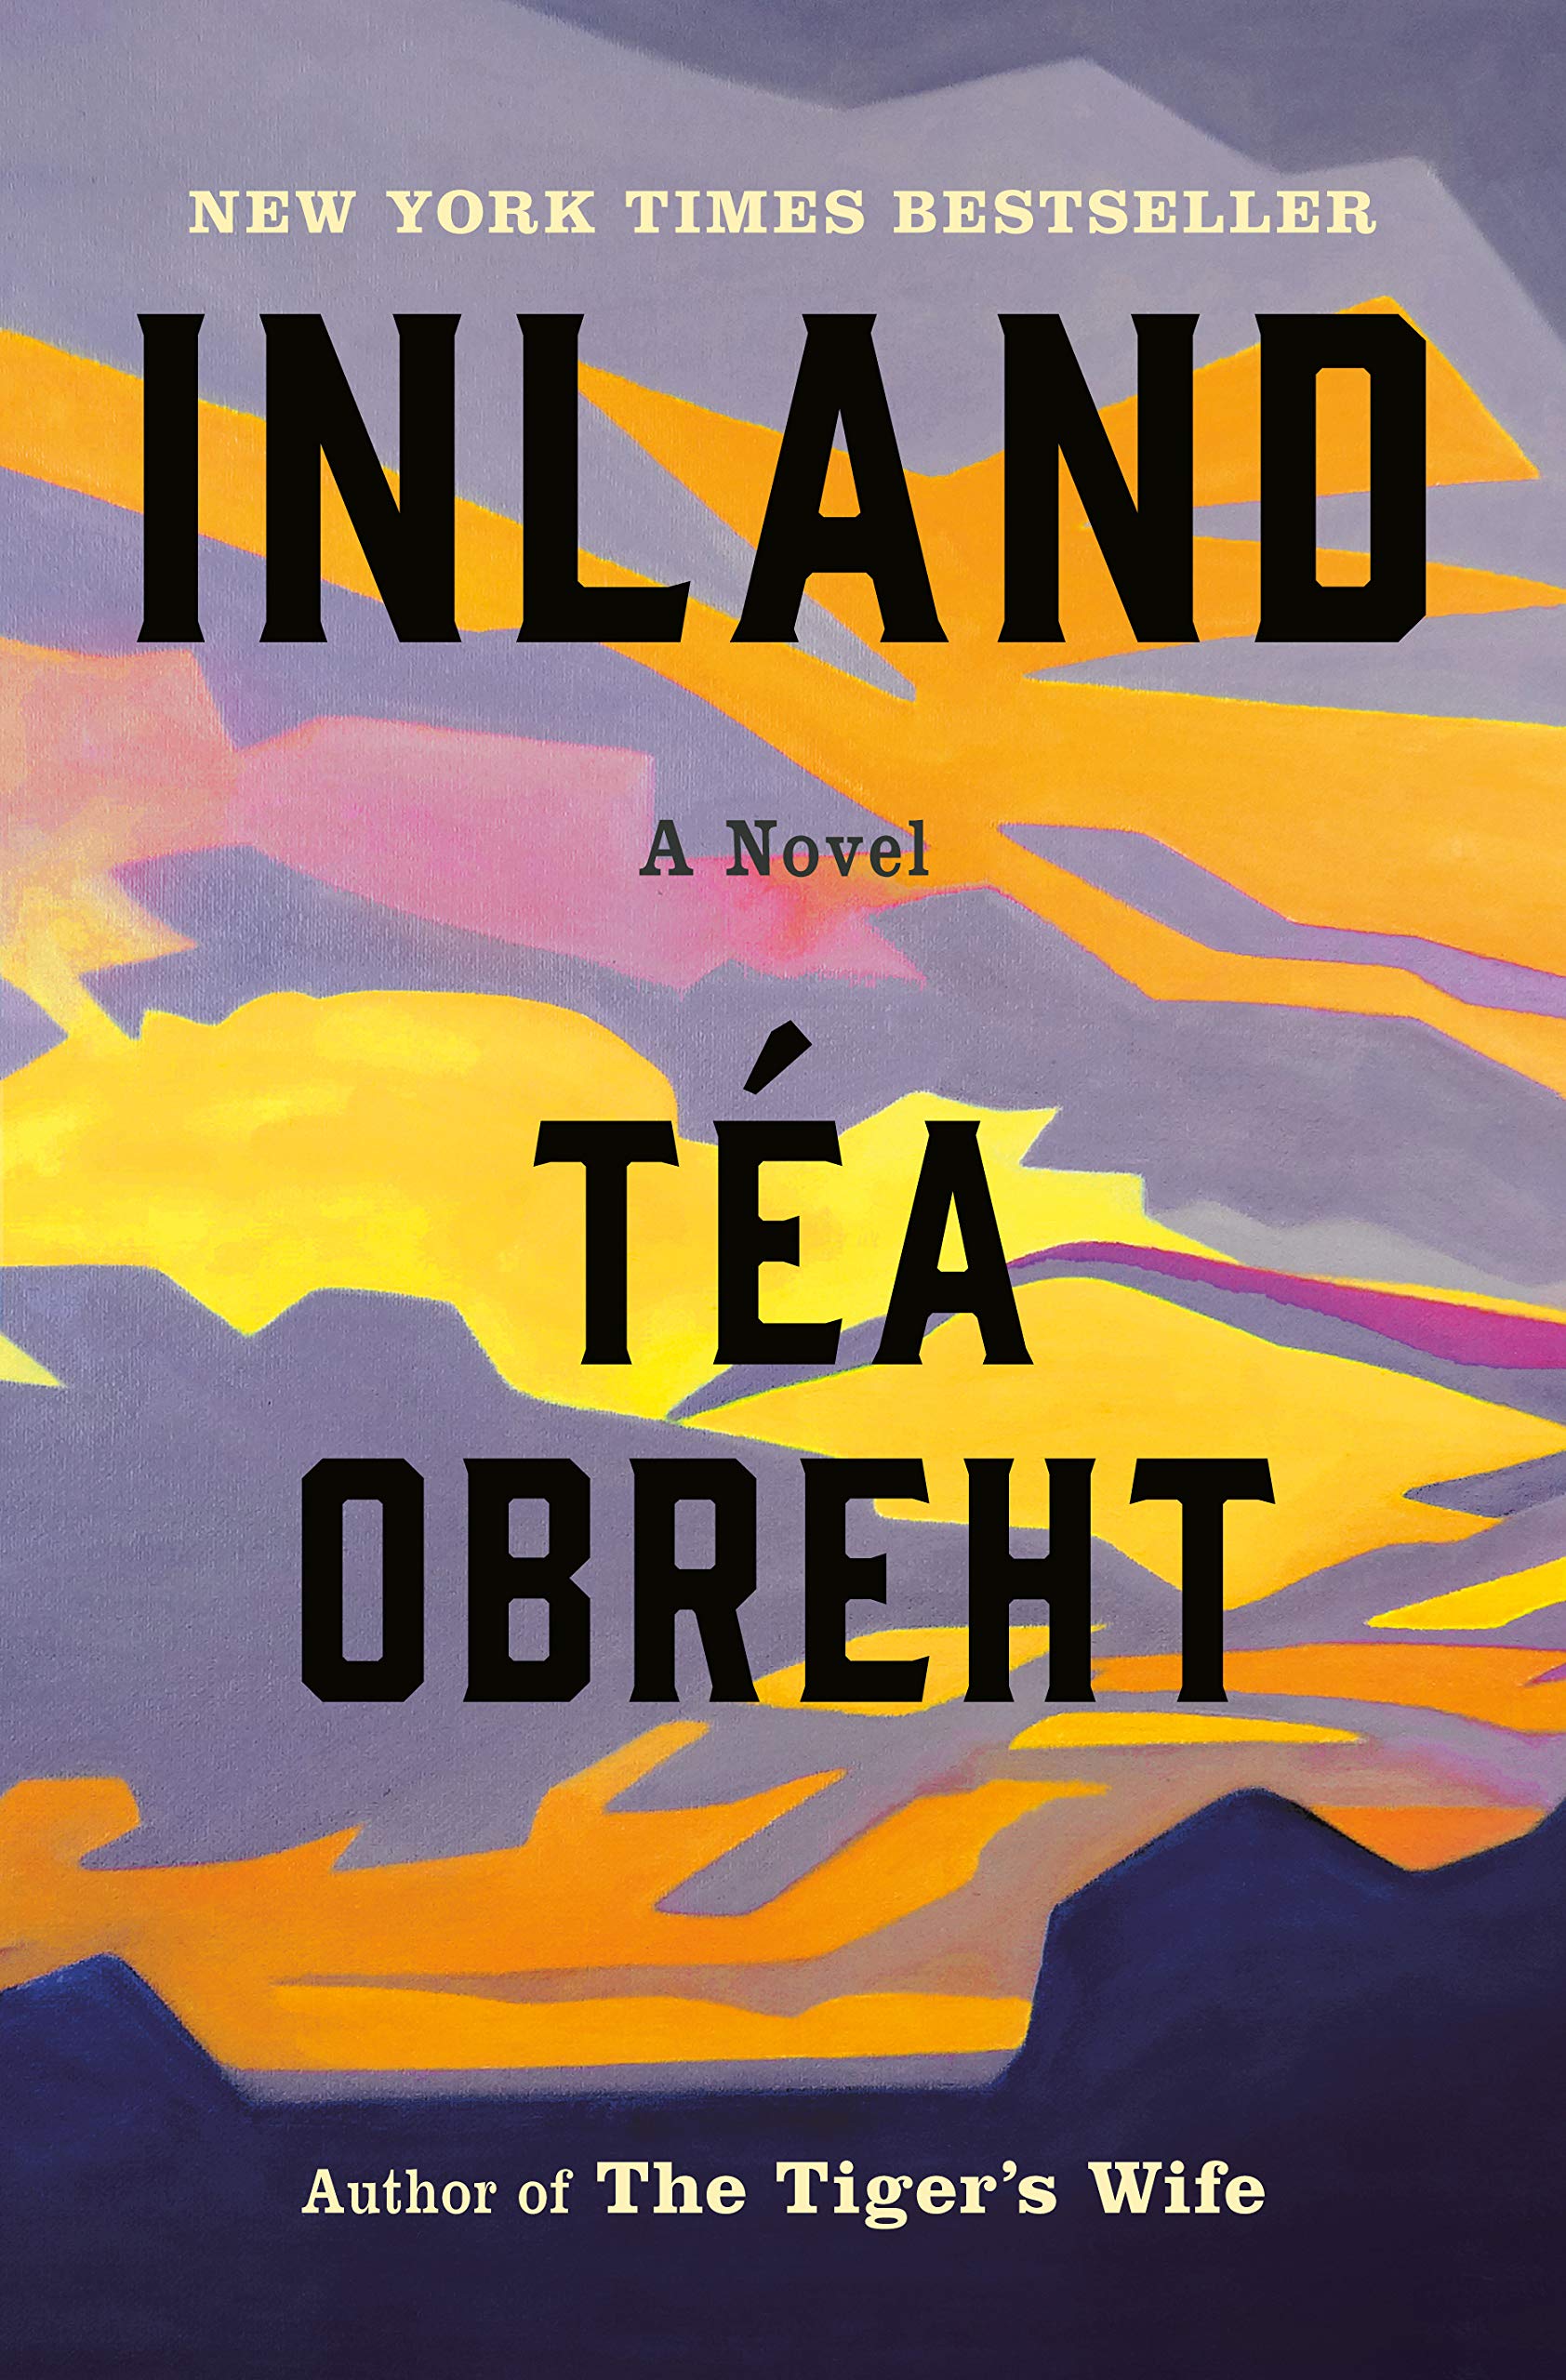 Inland : a novel